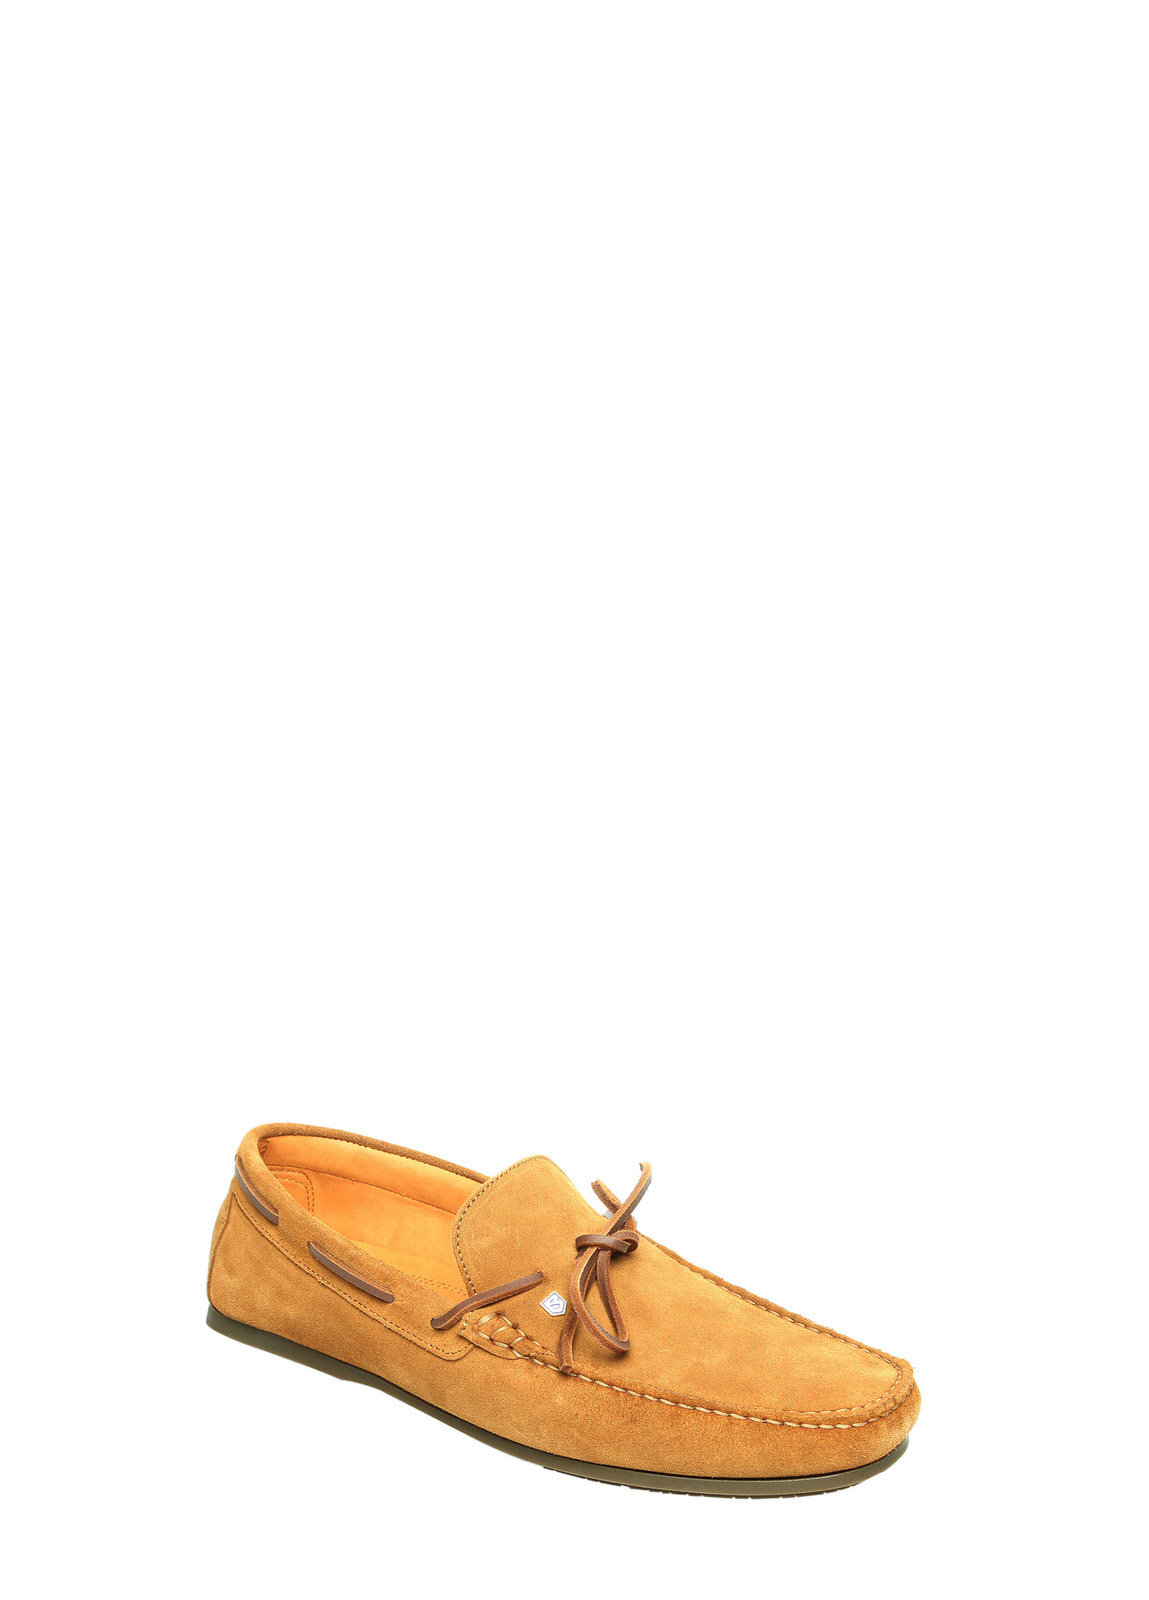 Corsica Camel Deck Shoes | Dubarry EU